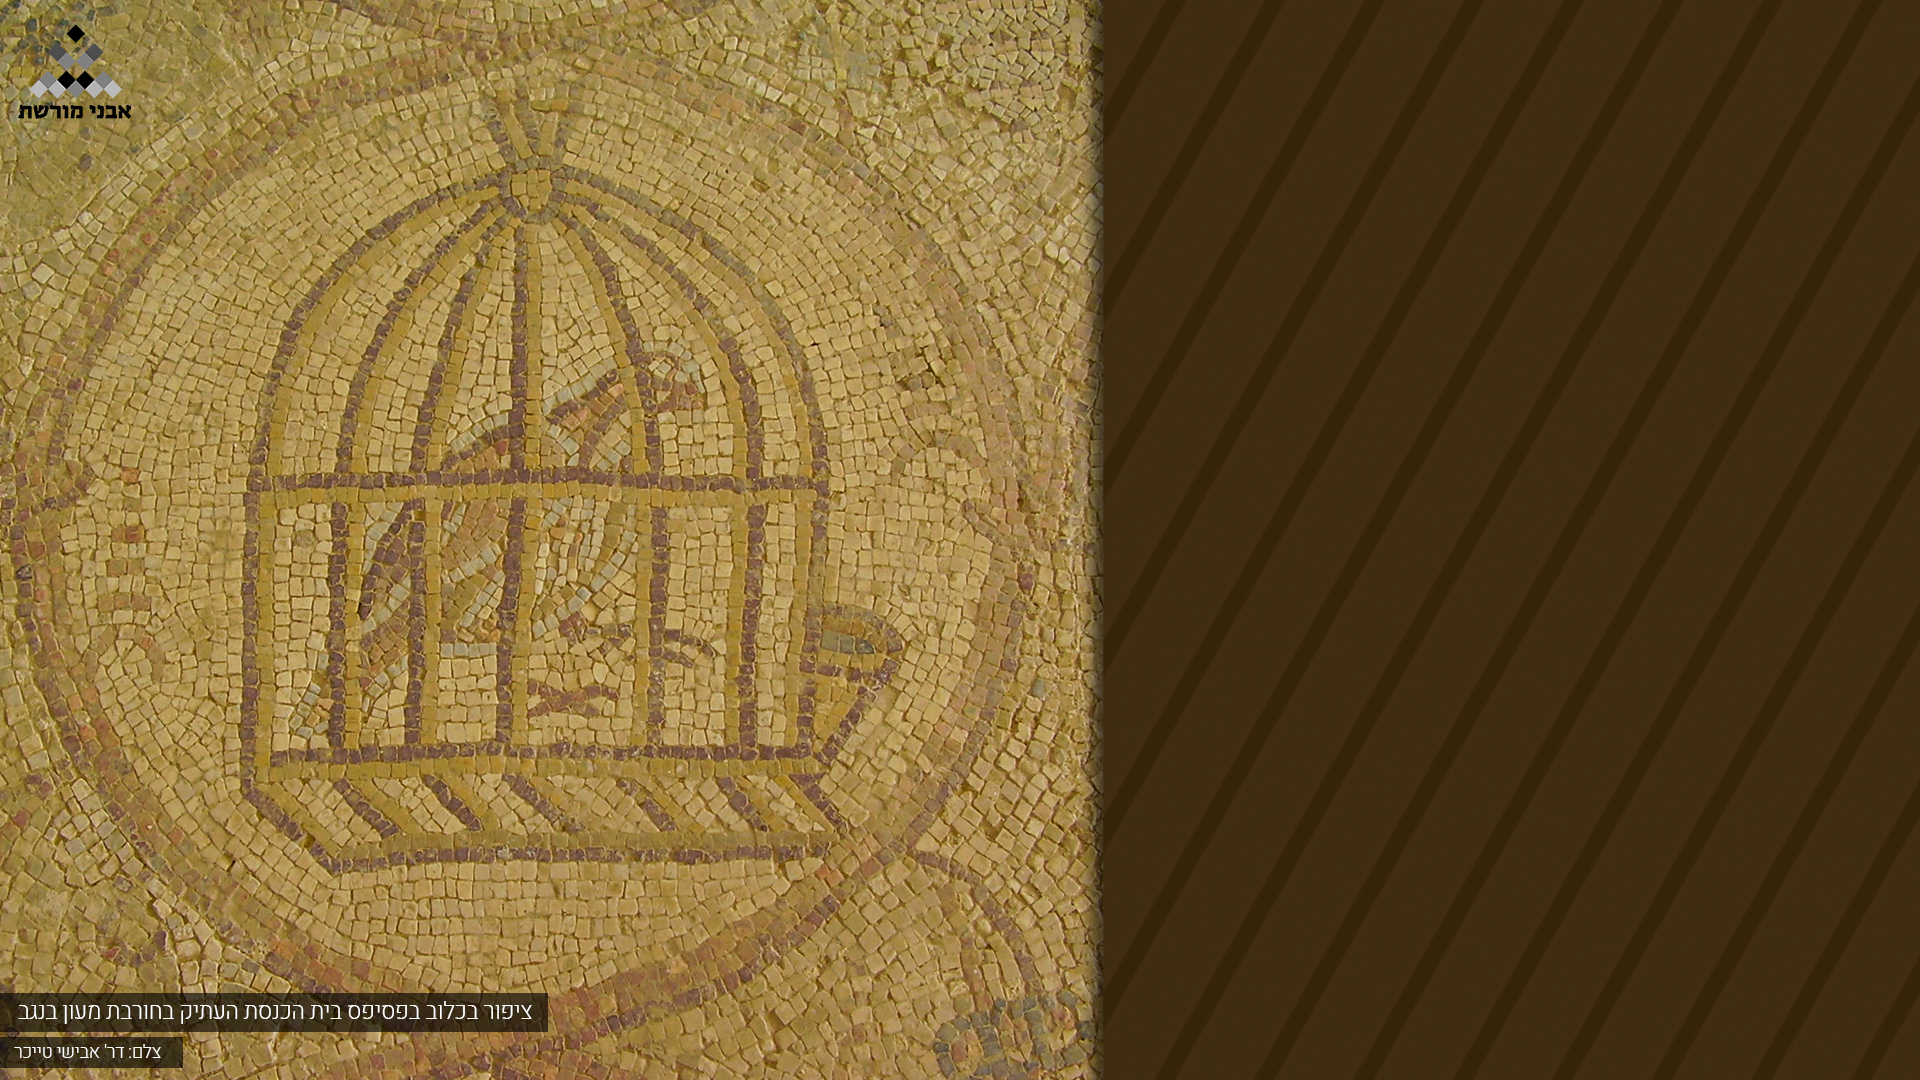 ציפור בכלוב בפסיפס בית הכנסת העתיק בחורבת מעון בנגב 